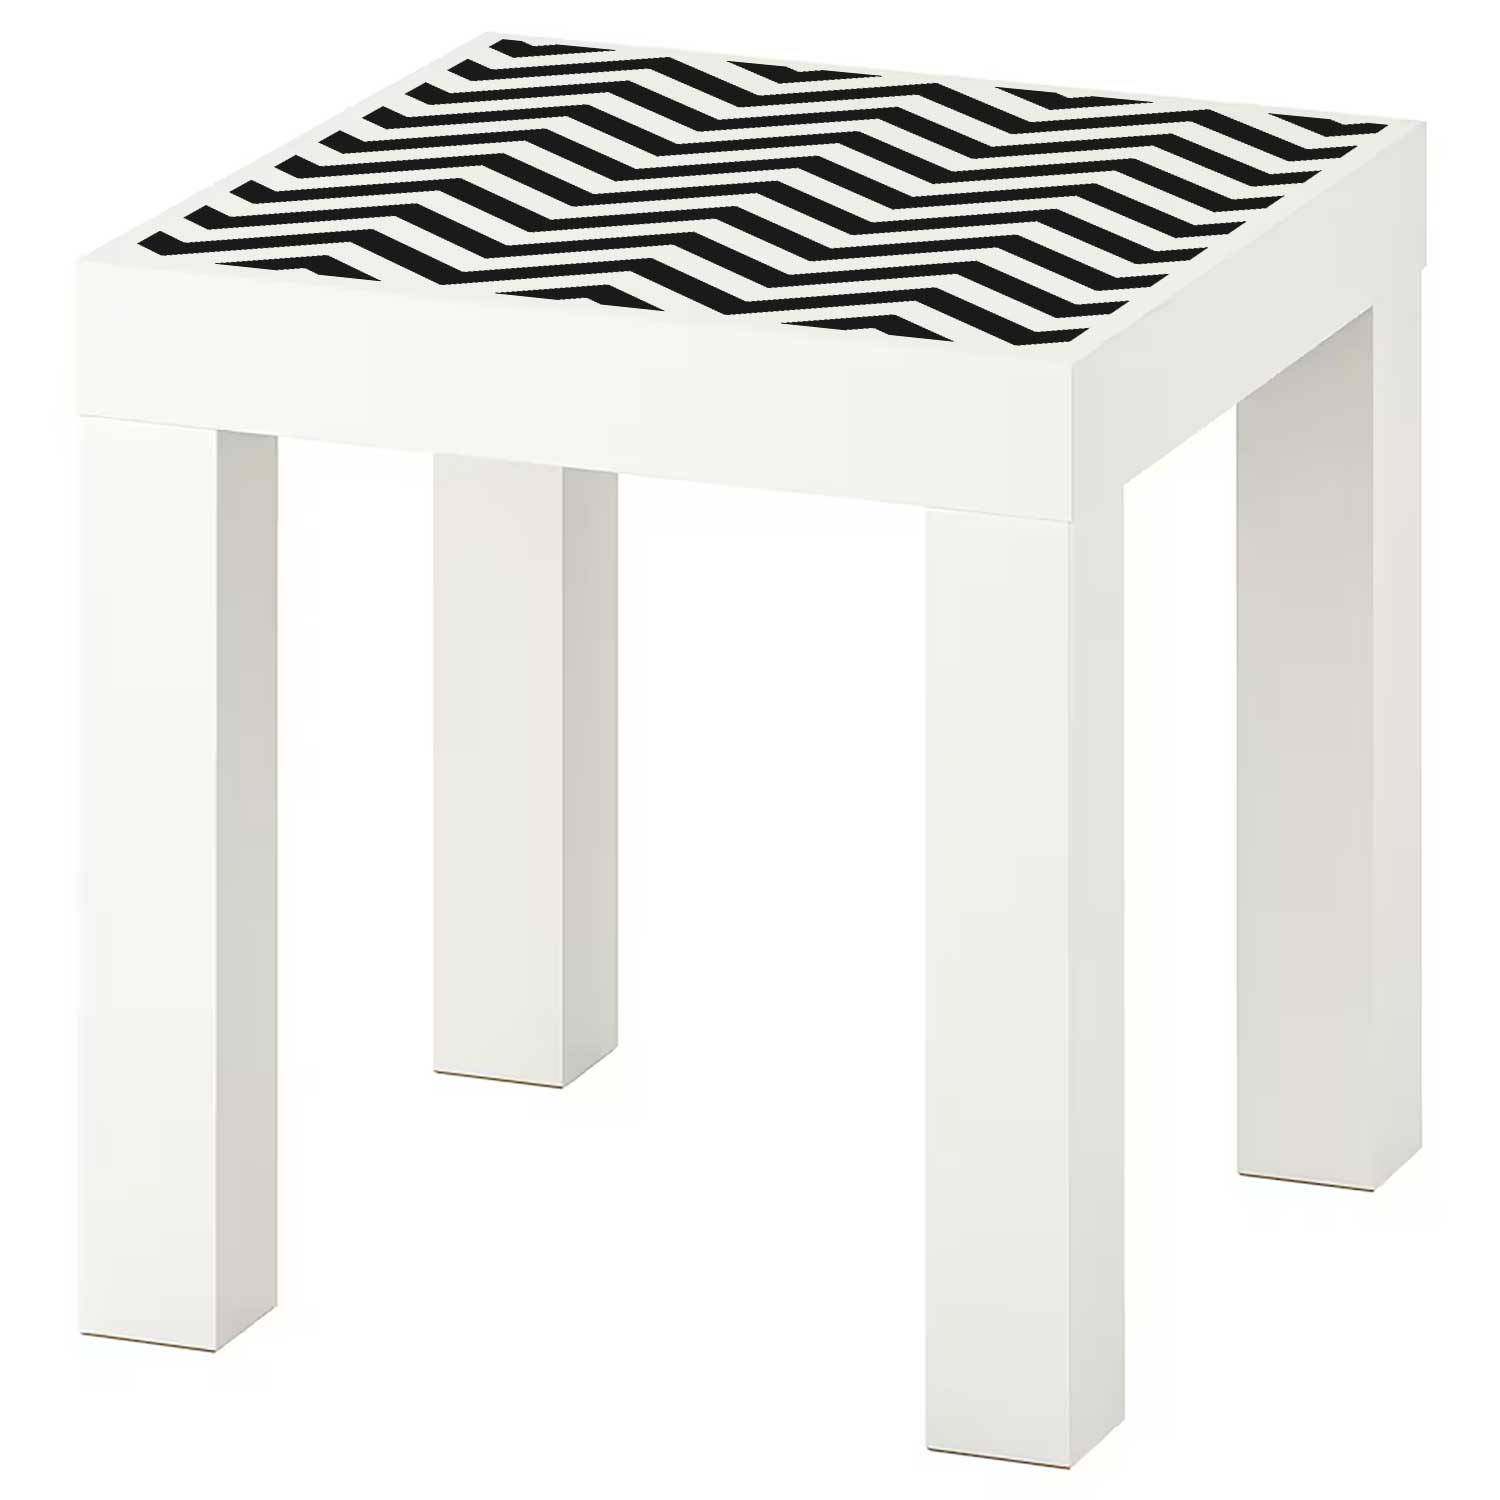 Möbelfolie für IKEA Lack Tisch 35x35 cm 'Zigzag'